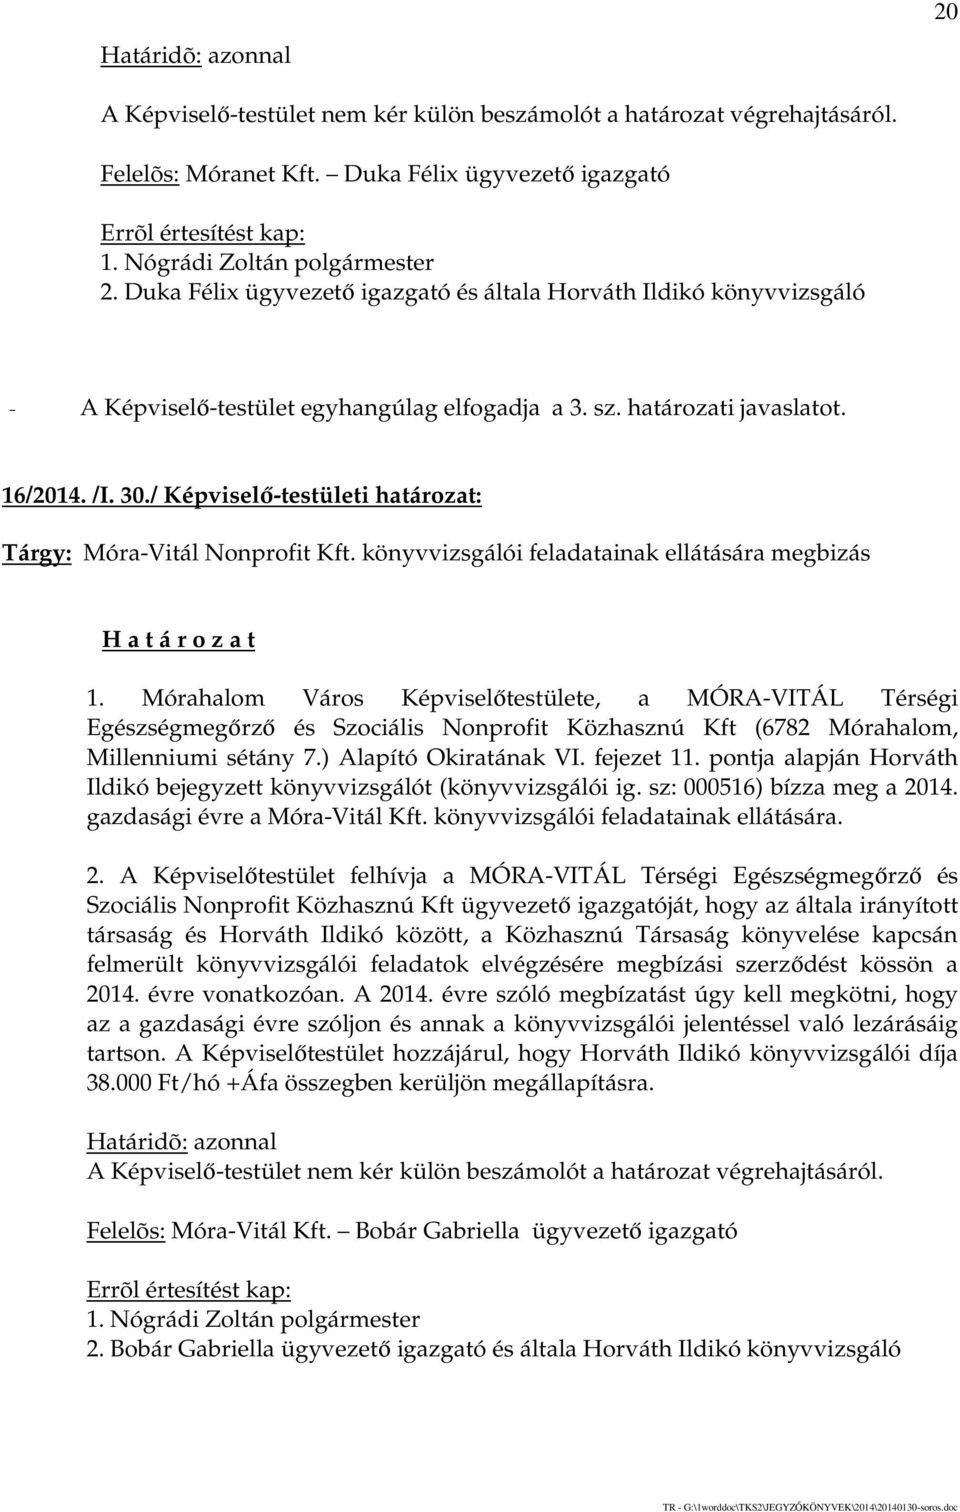 / Képviselő-testületi határozat: Tárgy: Móra-Vitál Nonprofit Kft. könyvvizsgálói feladatainak ellátására megbizás 1.